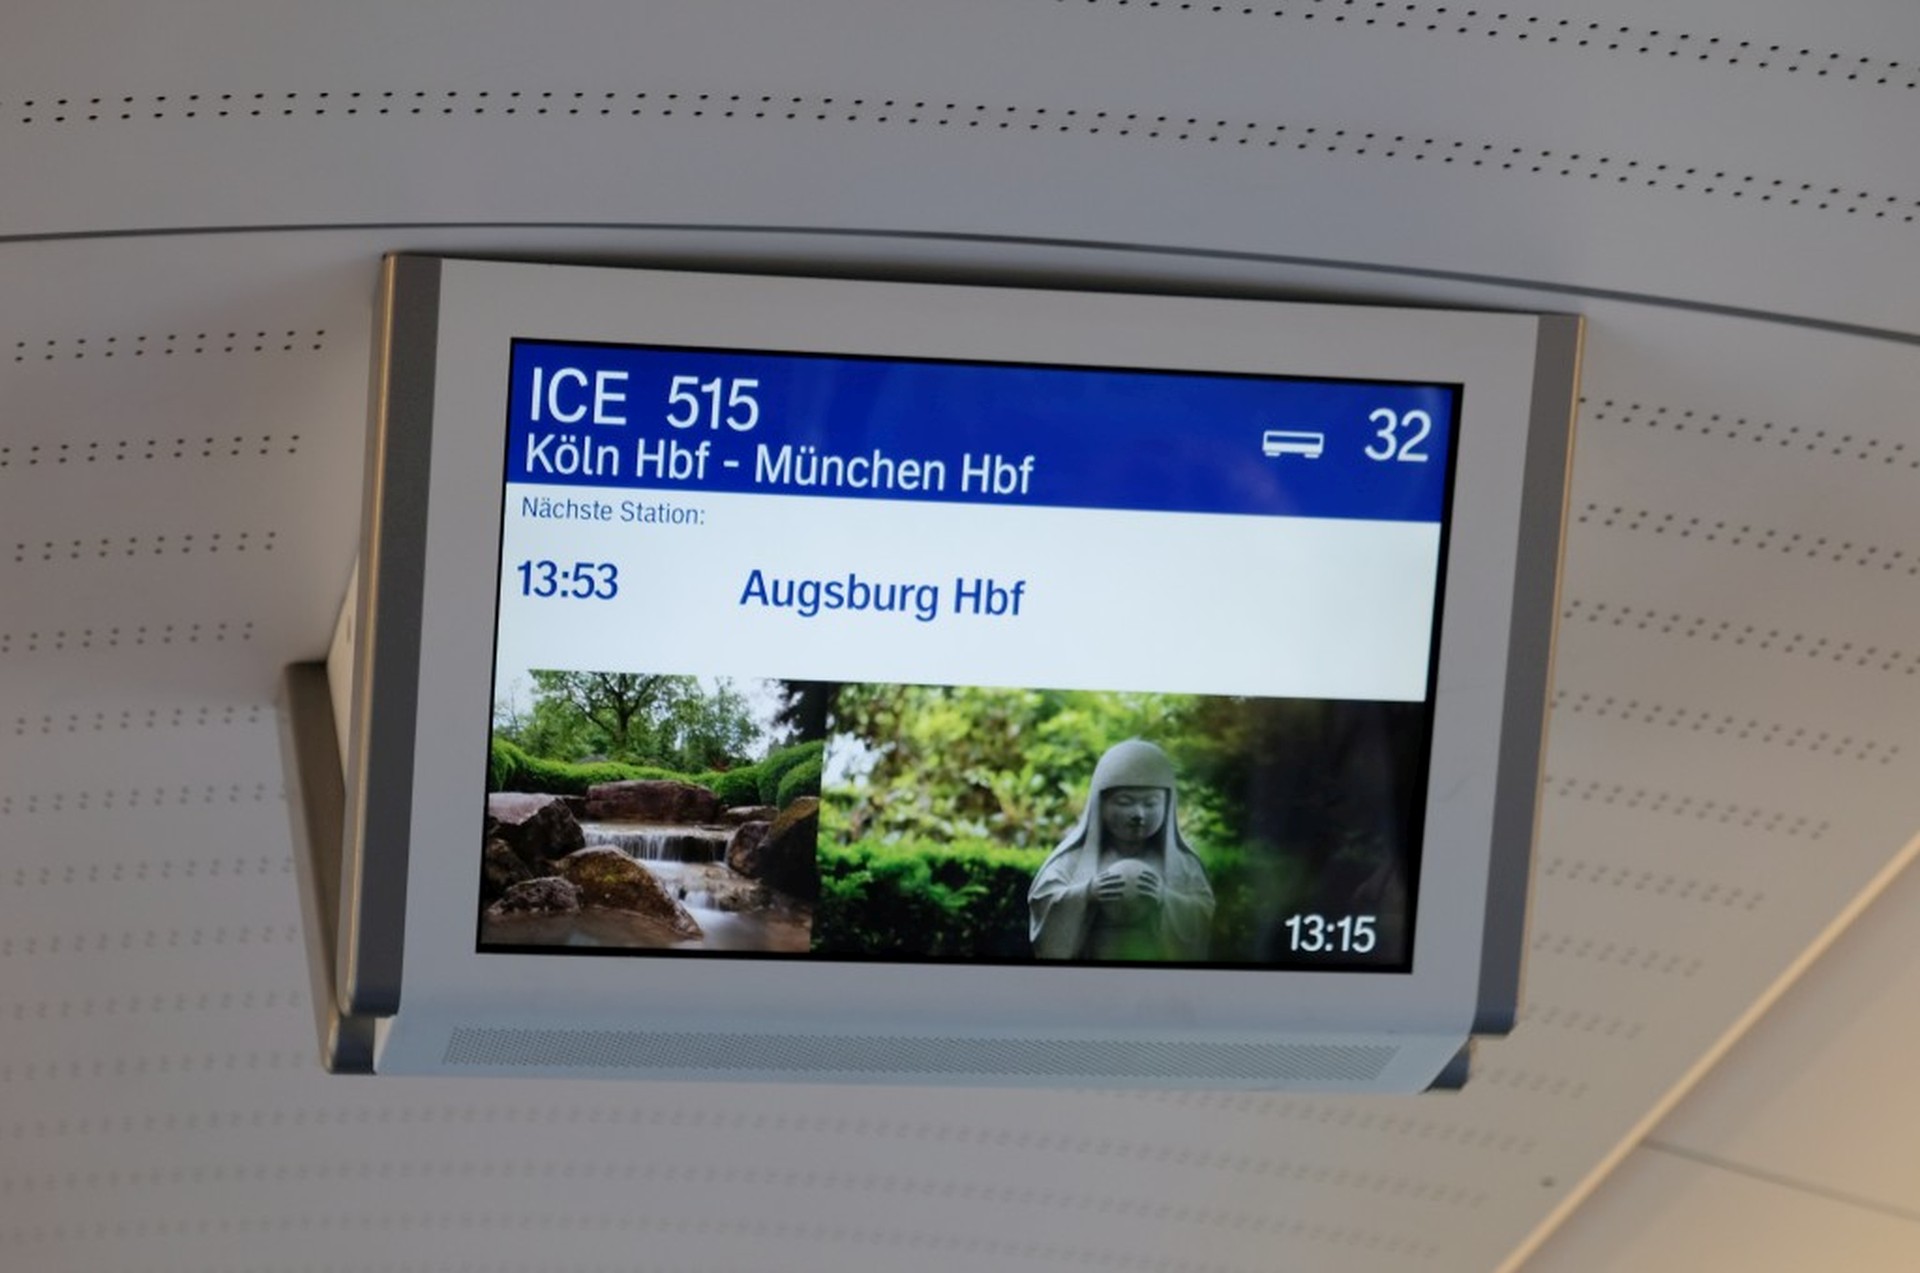 Anzeigetafel im ICE Zug mit der Aufschrift "Augsburg Hauptbahnhof"